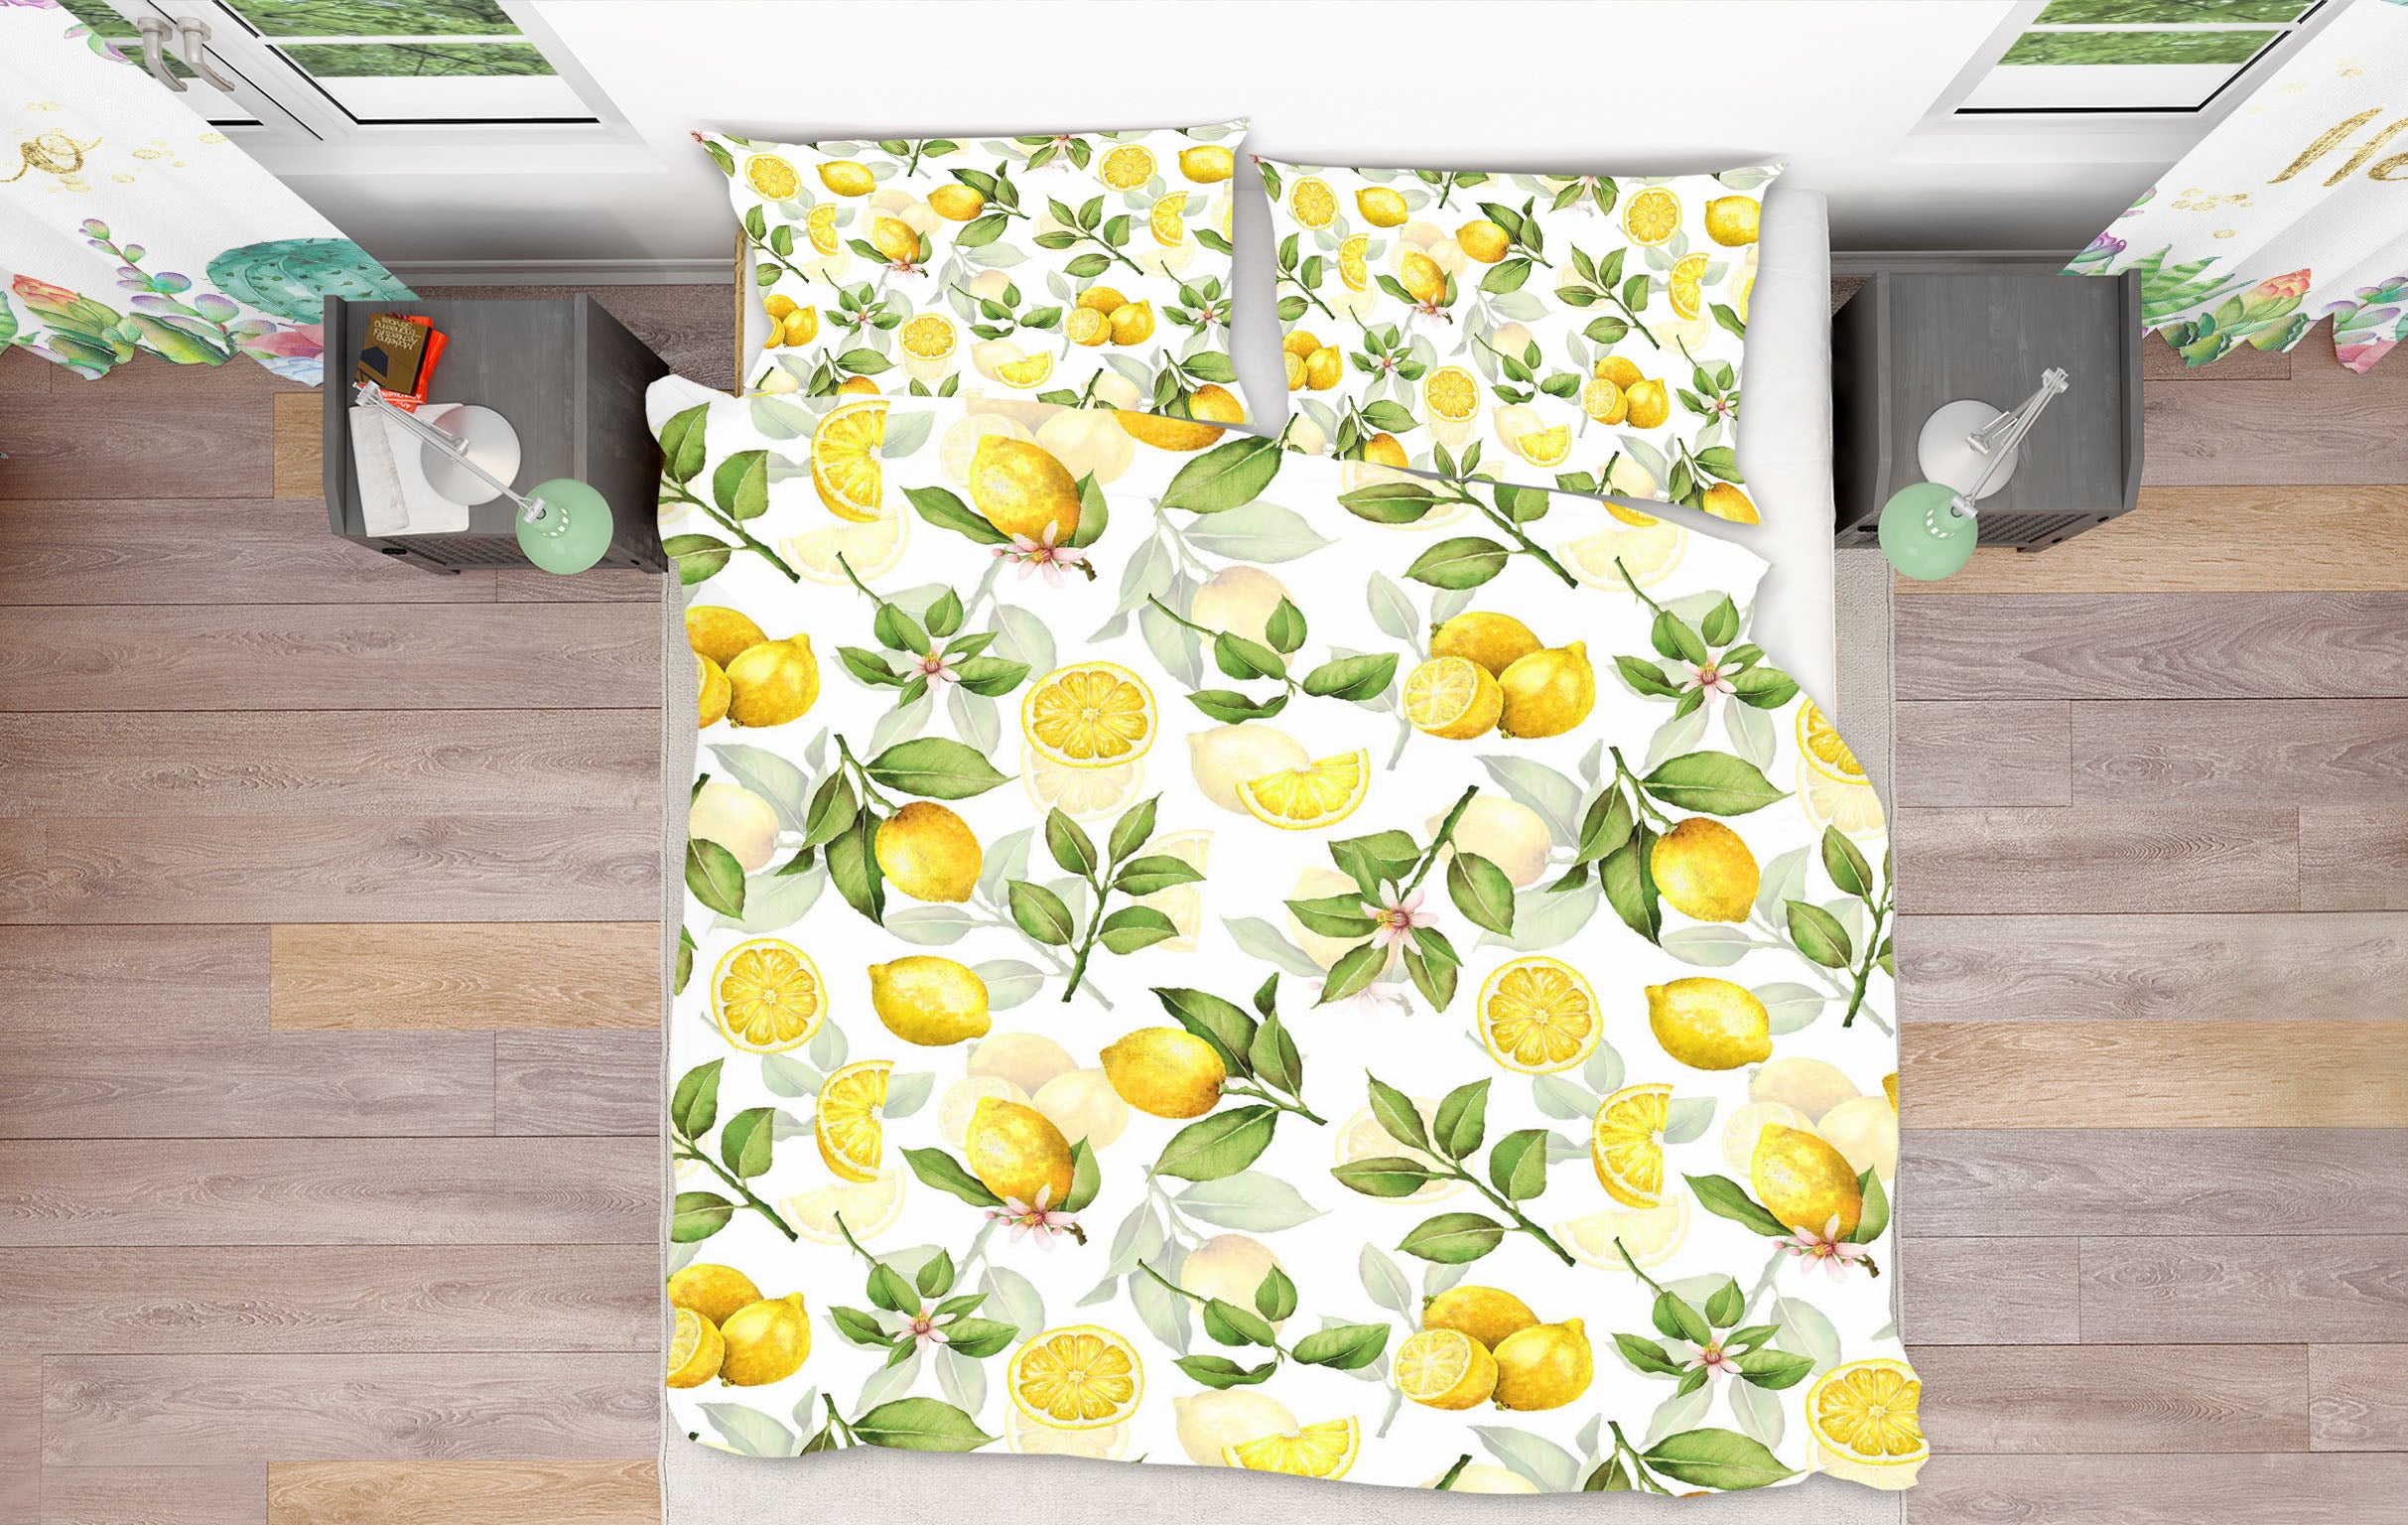 3D Lemon Pattern 18165 Uta Naumann Bedding Bed Pillowcases Quilt